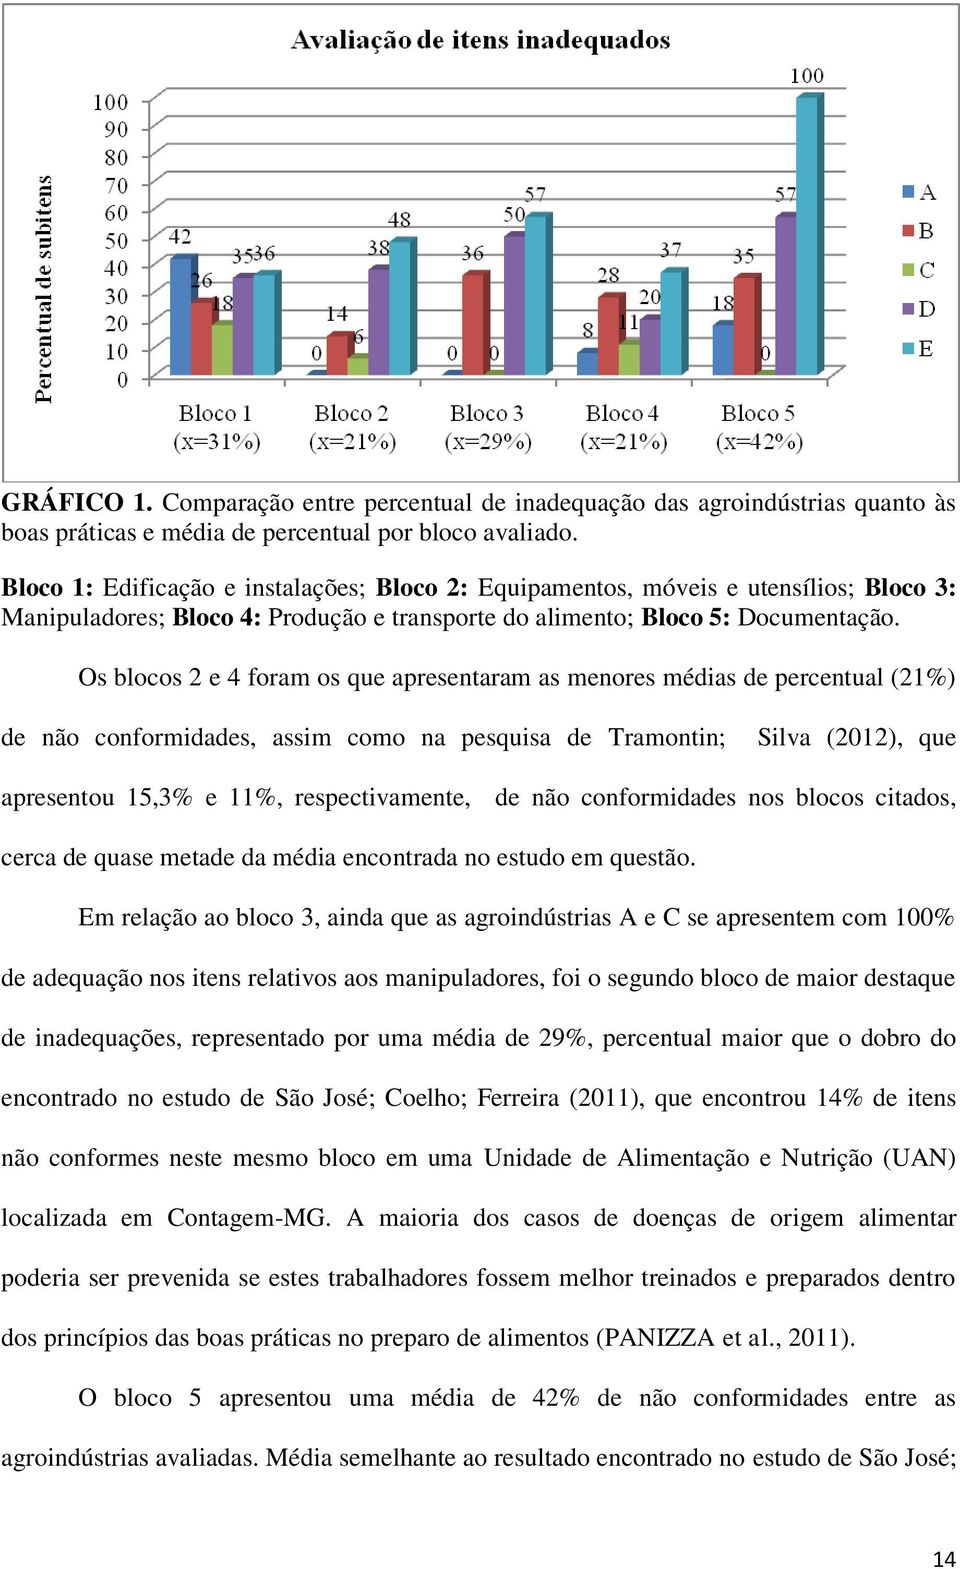 Os blocos 2 e 4 foram os que apresentaram as menores médias de percentual (21%) de não conformidades, assim como na pesquisa de Tramontin; Silva (2012), que apresentou 15,3% e 11%, respectivamente,